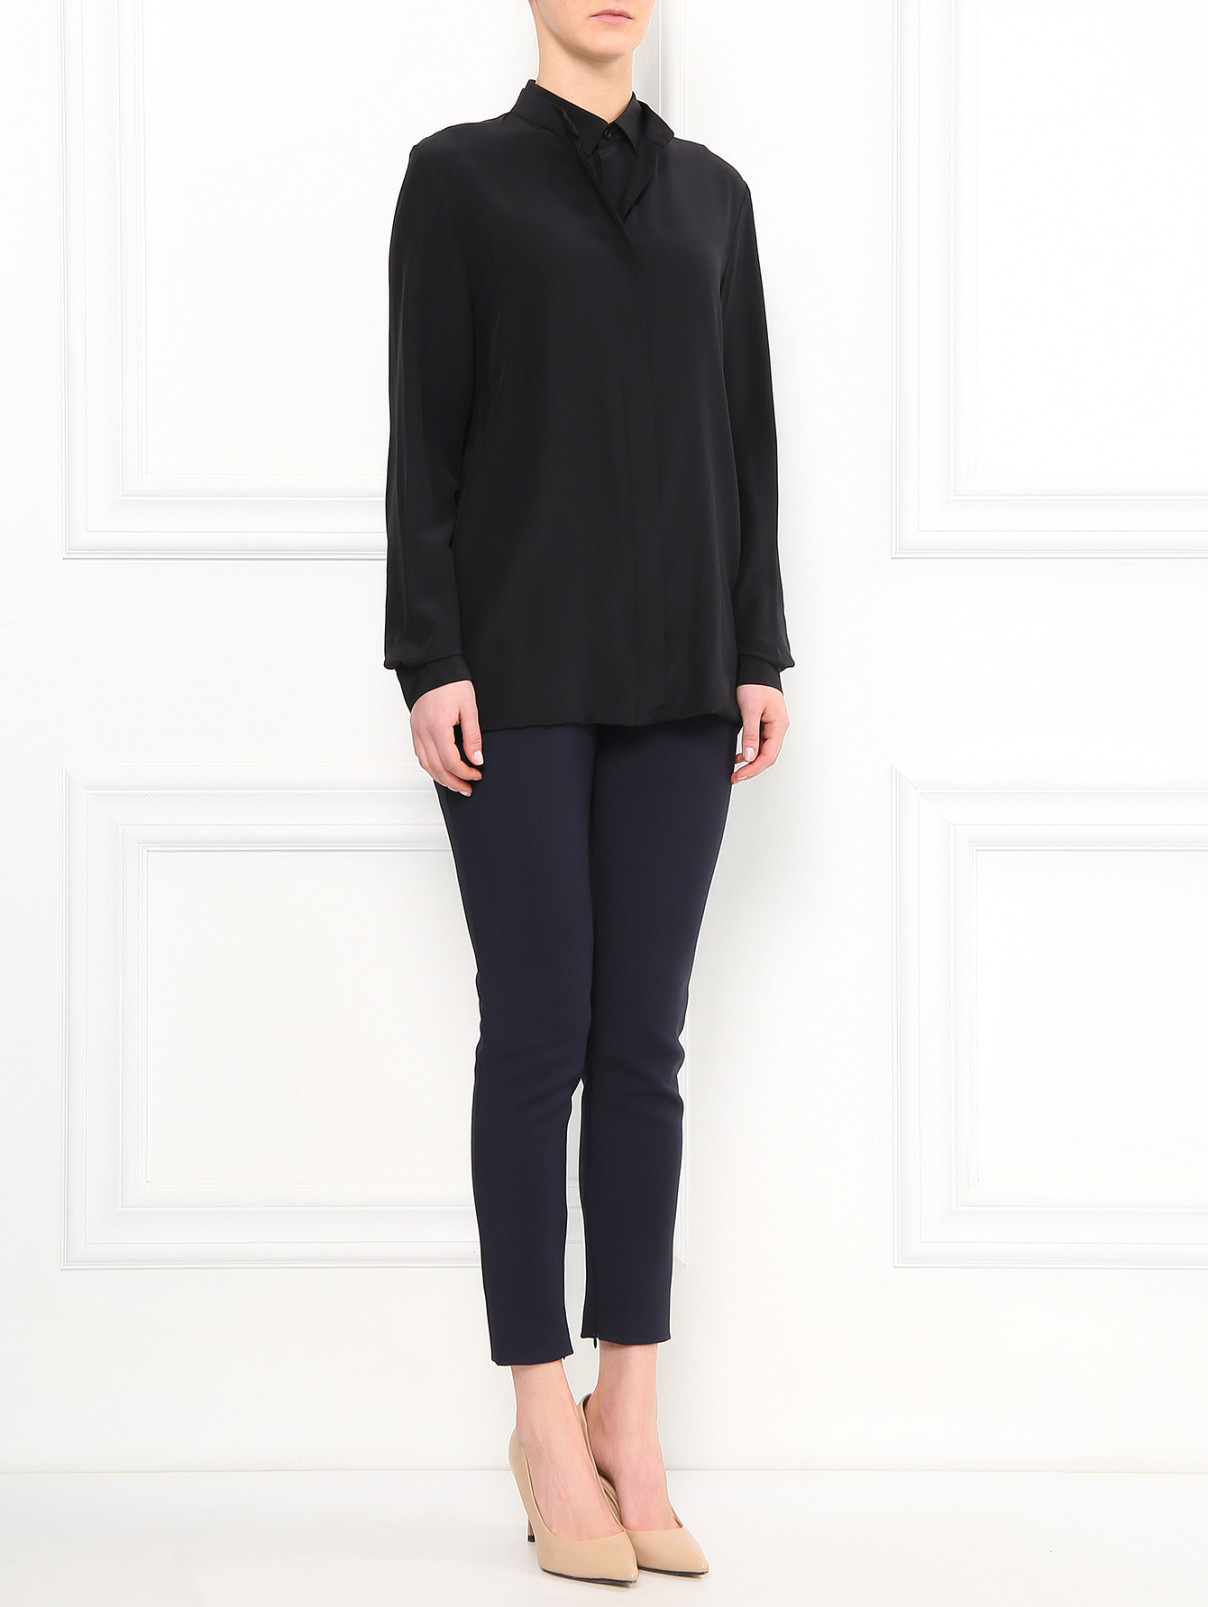 Блуза из шелка с двойным воротником Barbara Bui  –  Модель Общий вид  – Цвет:  Черный